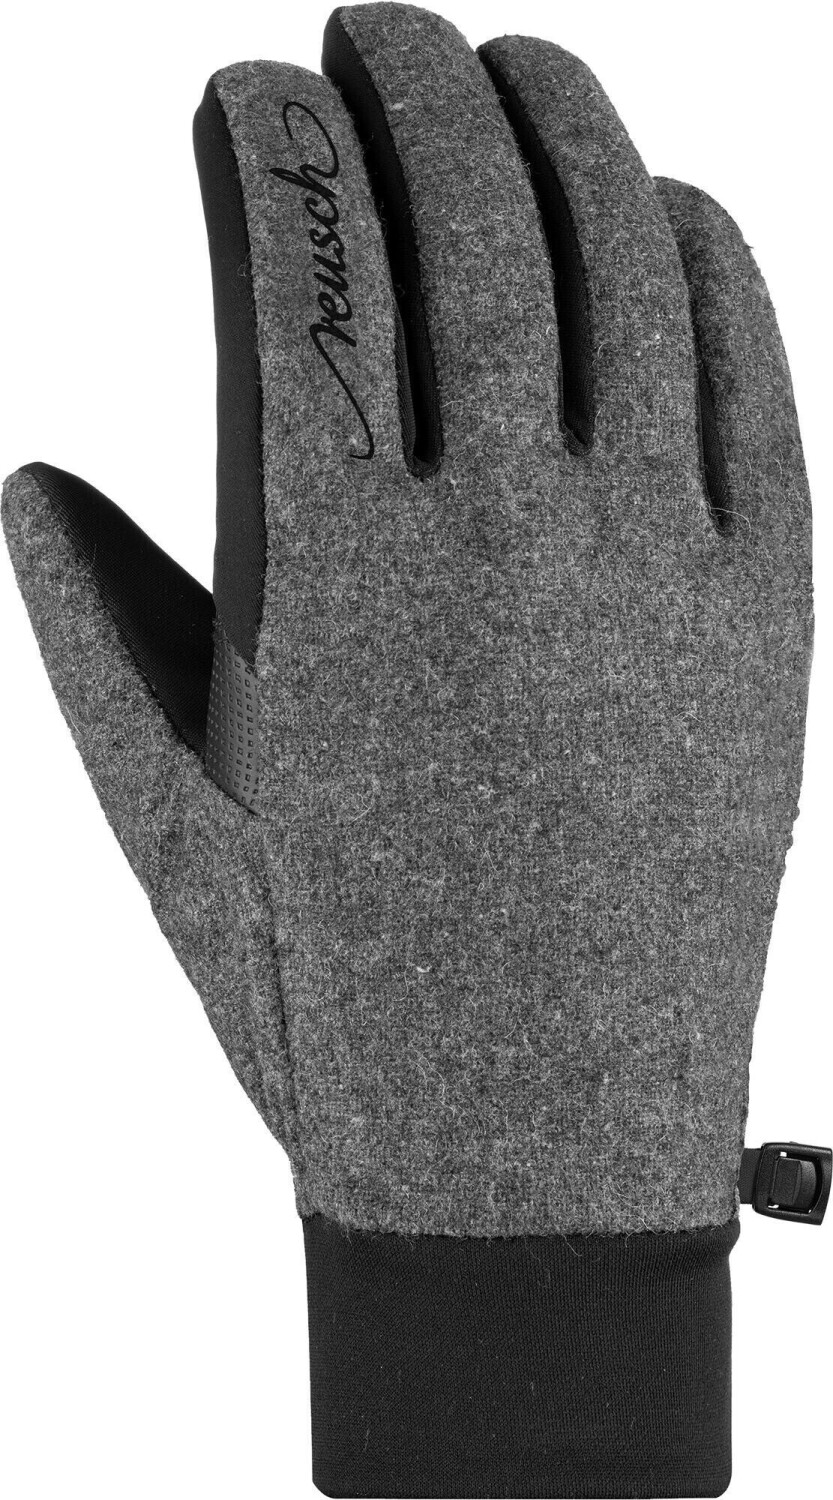 Reusch Saskia Touch-Tech Glove black/greyalpine € Preisvergleich | melange bei ab 28,05